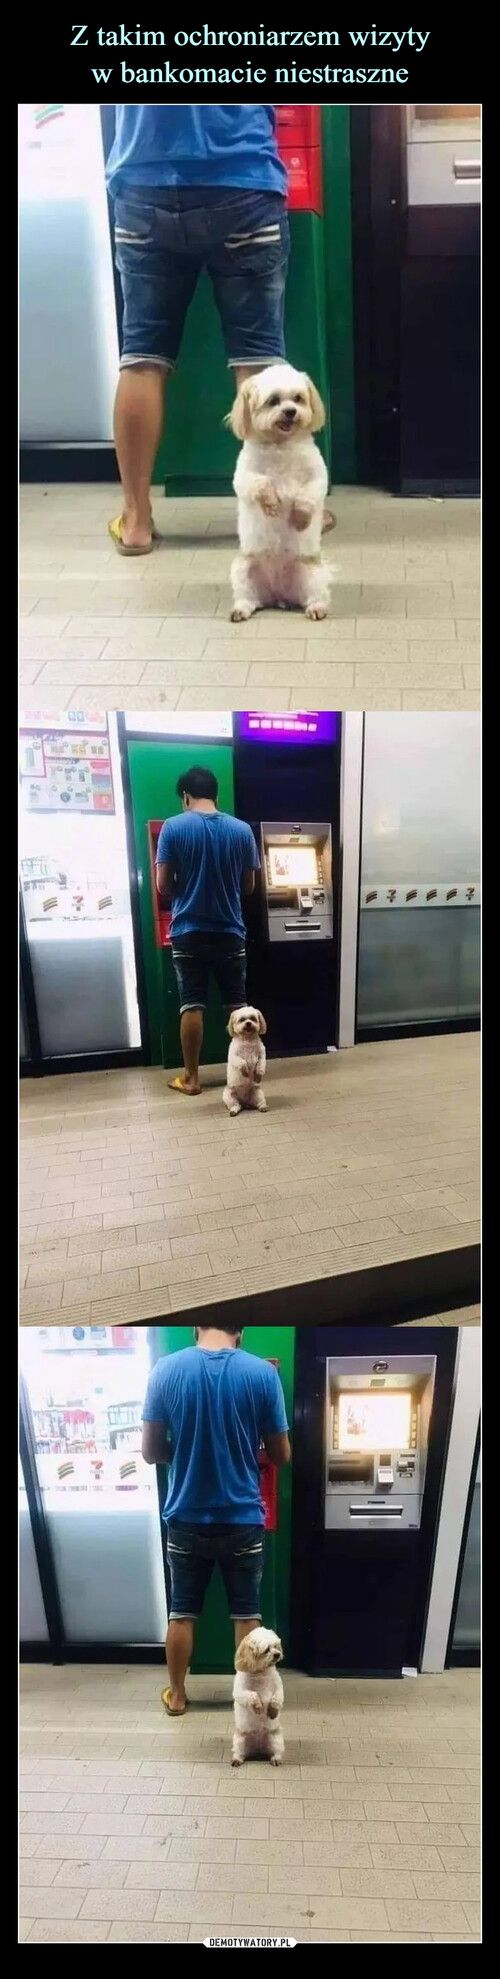 Z takim ochroniarzem wizyty
w bankomacie niestraszne